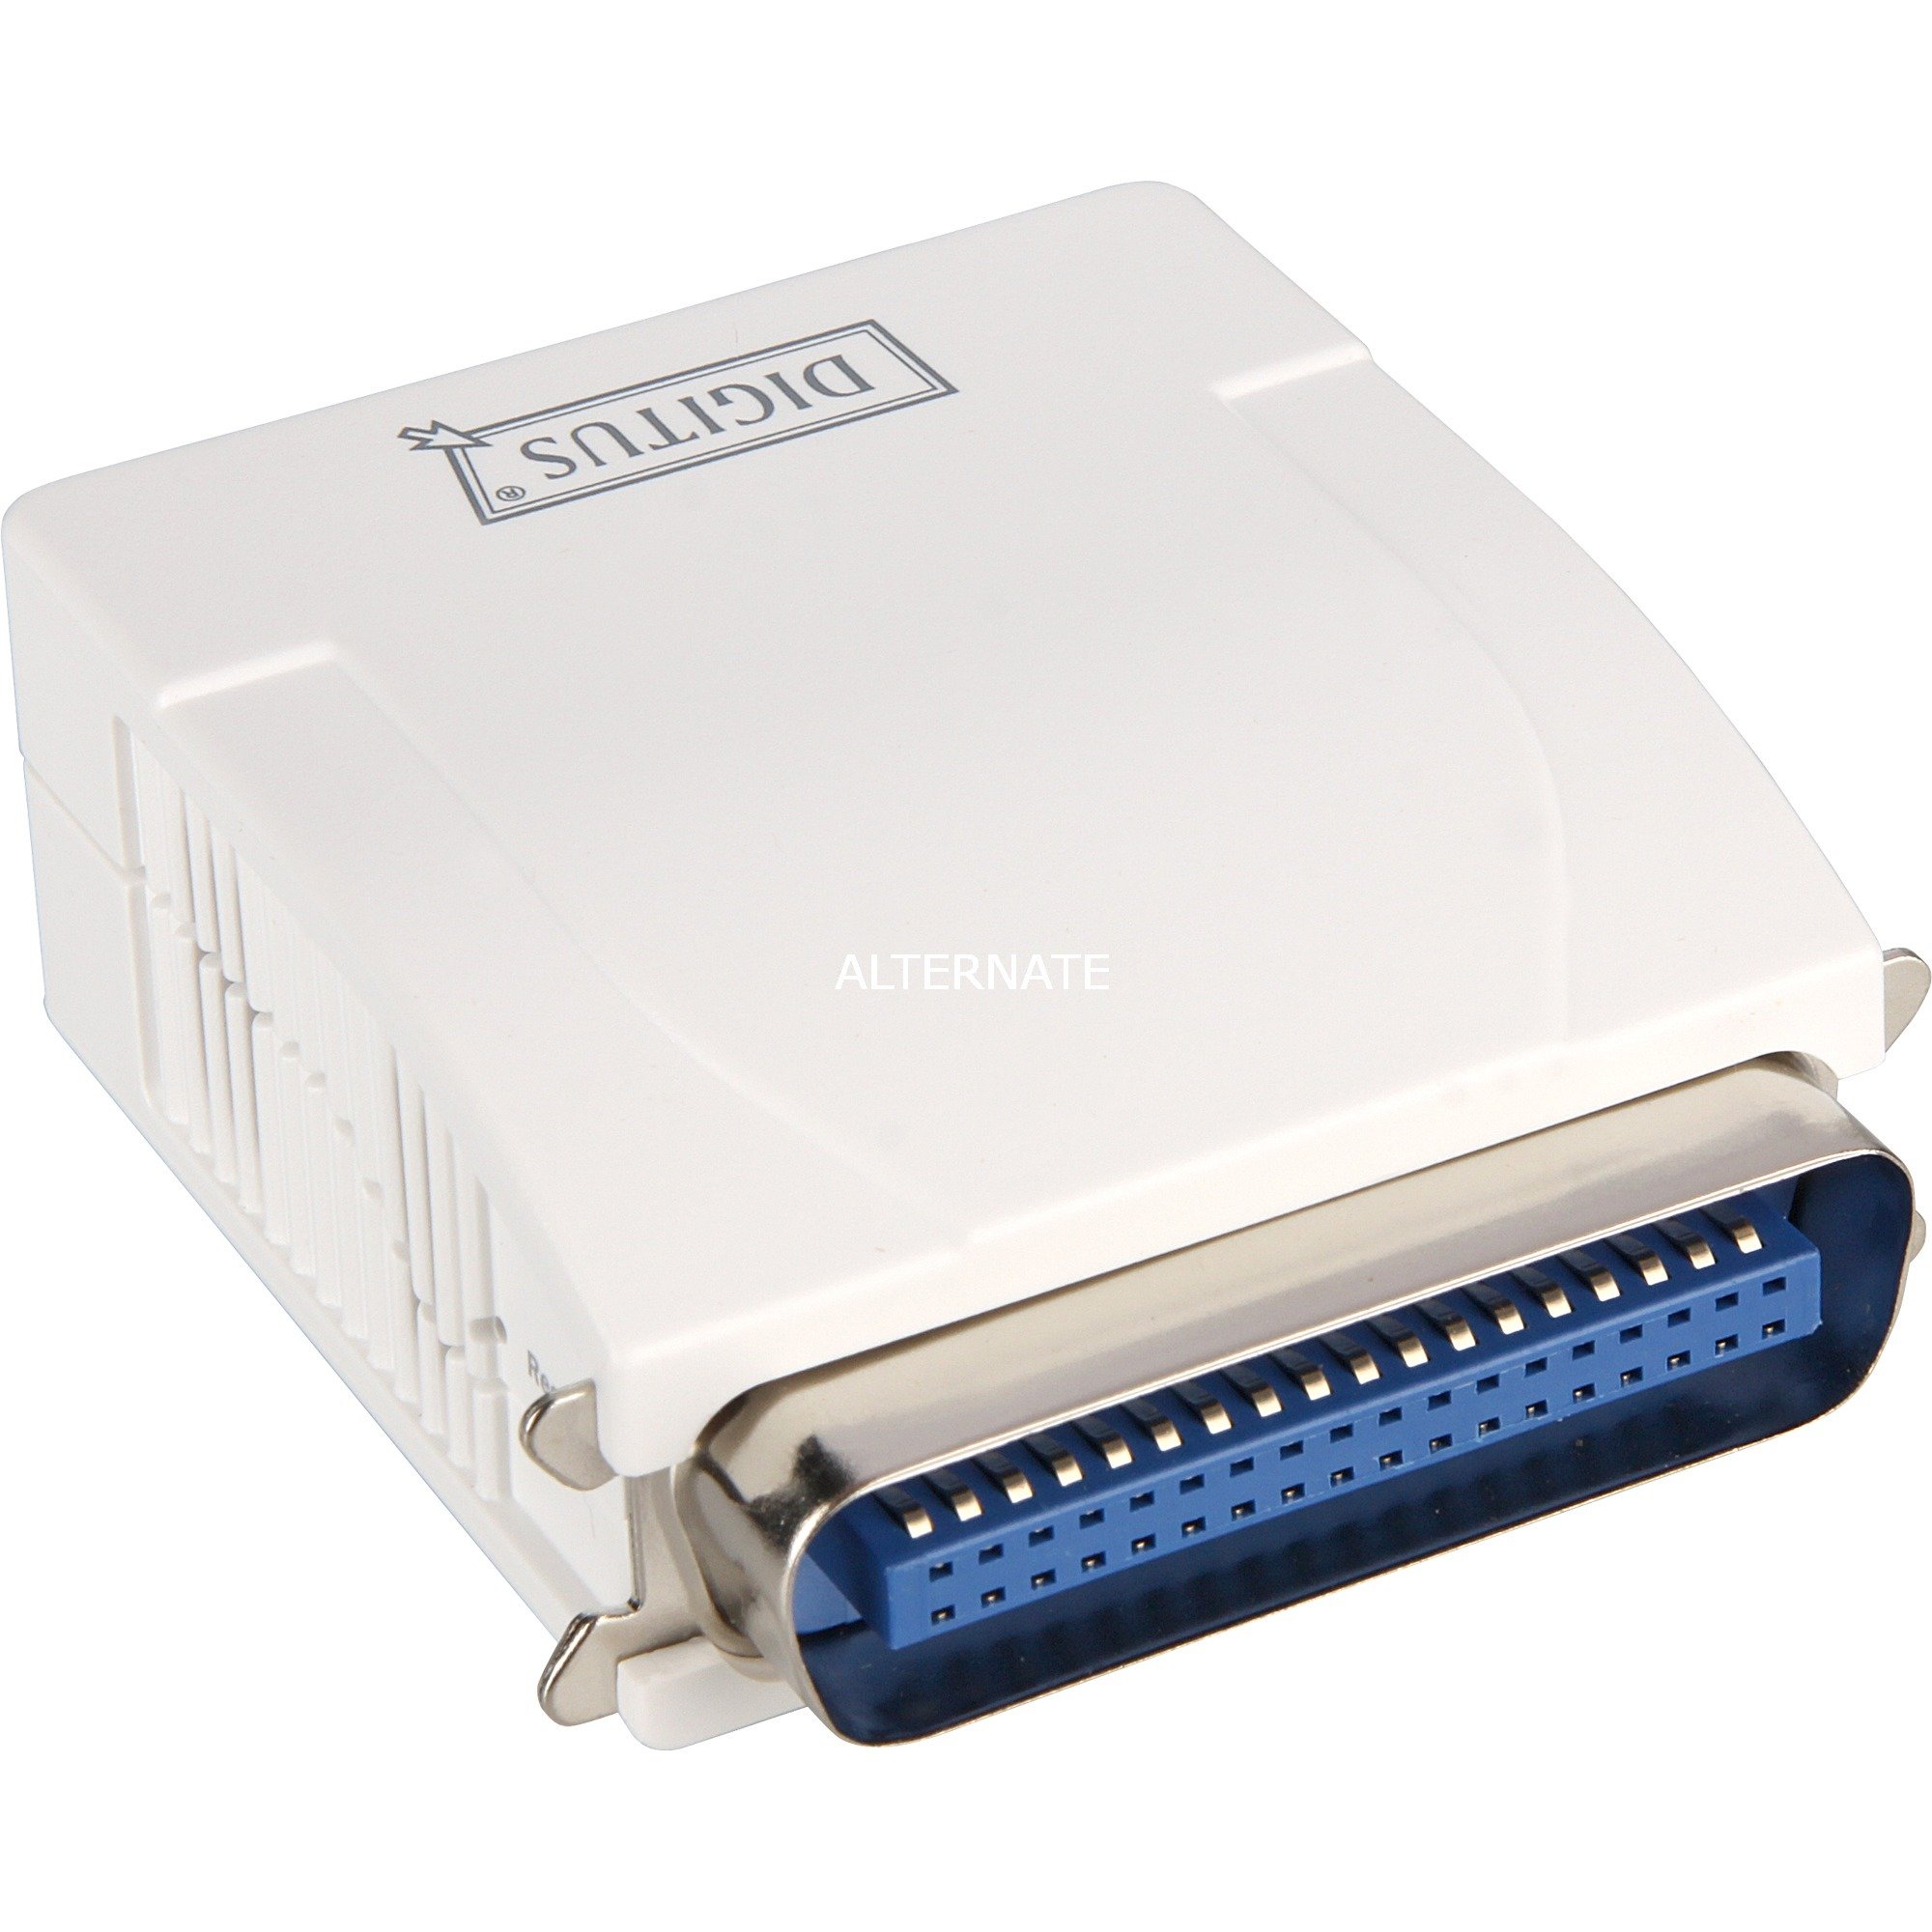 Image of Alternate - Fast Ethernet Print Server (DN-13001-1), Printserver online einkaufen bei Alternate